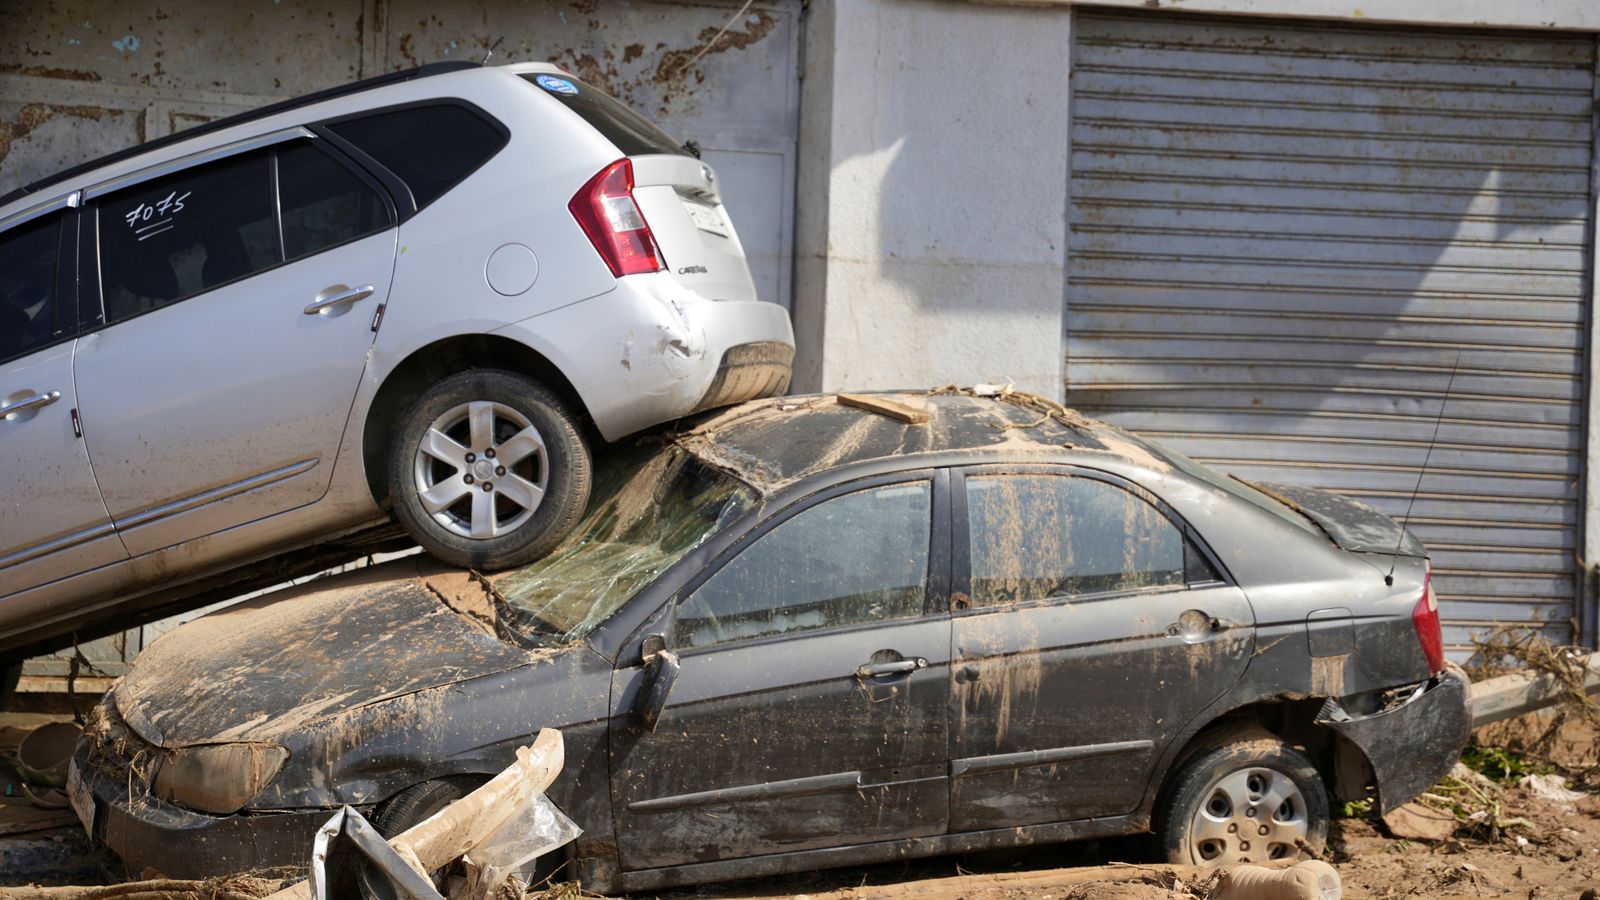 Lũ lụt ở Libya: Hơn 5.300 người có thể đã thiệt mạng sau vụ vỡ đập - Ảnh 1.